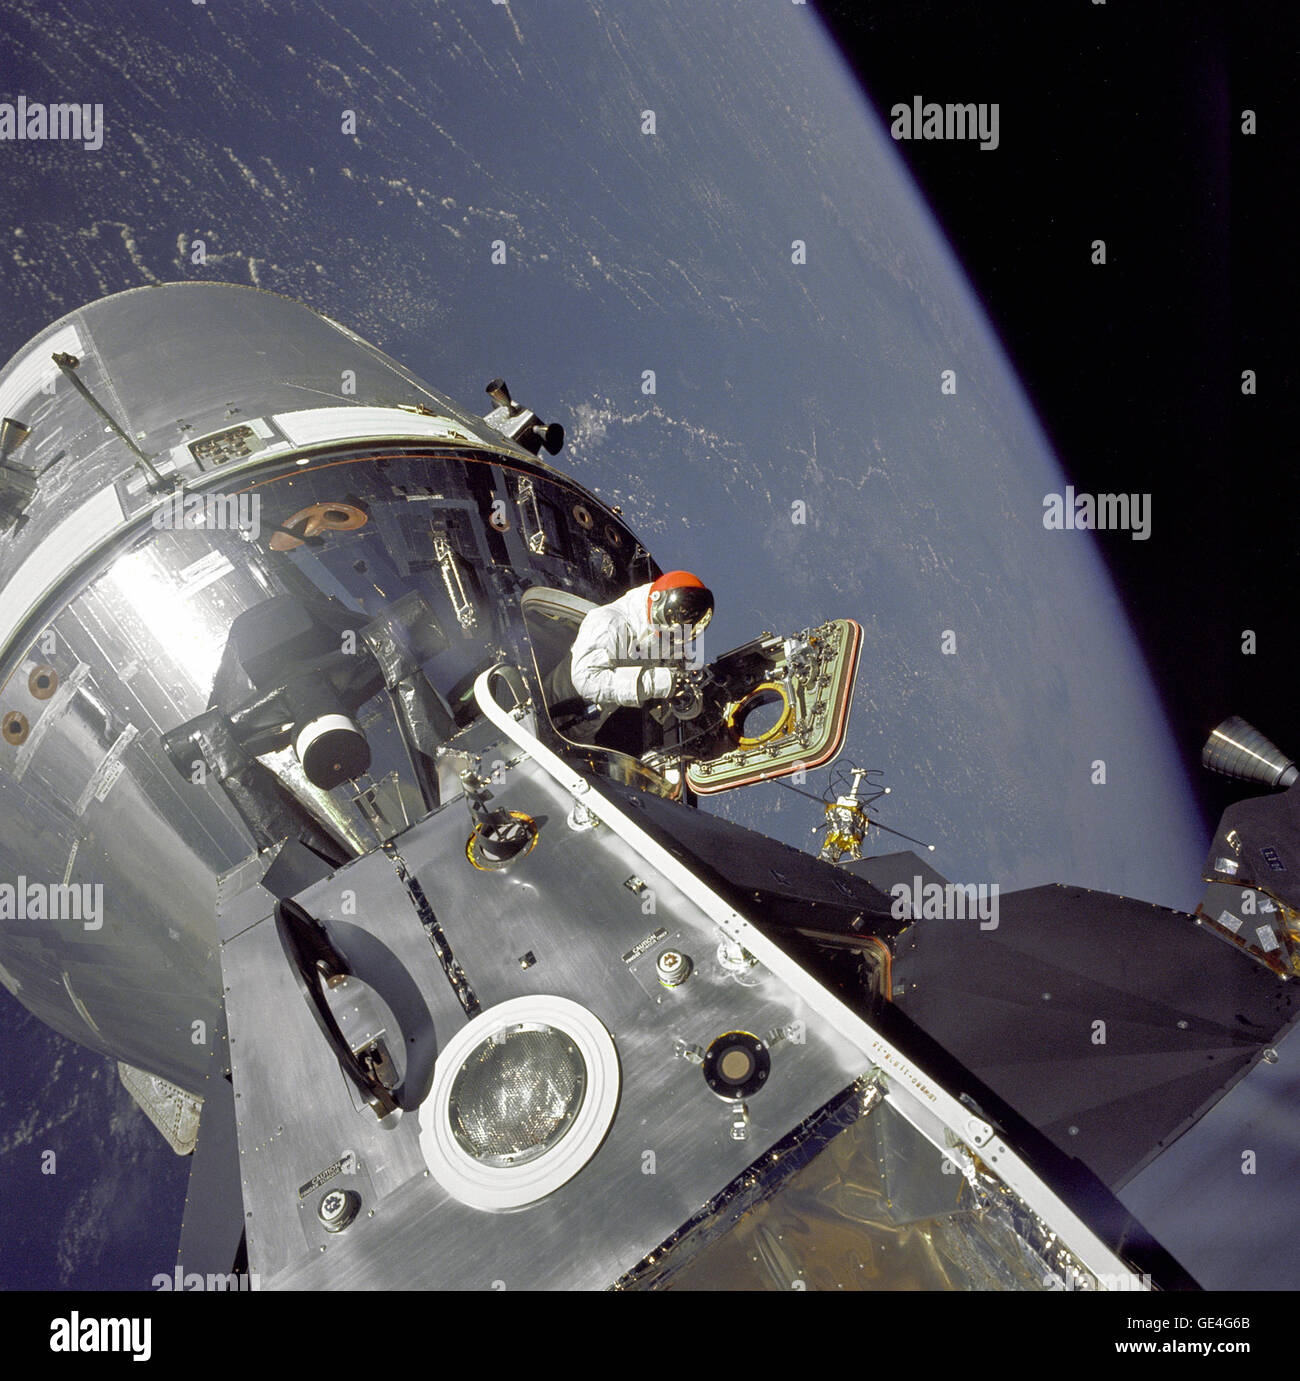 (6 marzo 1969) Apollo 9 comando/moduli di servizio (CSM) soprannominato "Decorazione caramelle" e il modulo lunare (LM), soprannominato "ragno" sono ancorati insieme come il pilota del modulo di comando David R. Scott sorge nella botola aperta. Astronauta Russell L. Schweickart, Modulo Lunare pilota, ha preso questa fotografia di Scott durante il suo EVA come rimase sulla veranda al di fuori del modulo lunare. Apollo 9 fu una terra di missione orbitale progettato per testare le procedure di aggancio tra il CSM e LM nonché il test volare il modulo lunare nel relativo sicuri confini di orbita terrestre. Immagine # : Come9-20-3064 Foto Stock